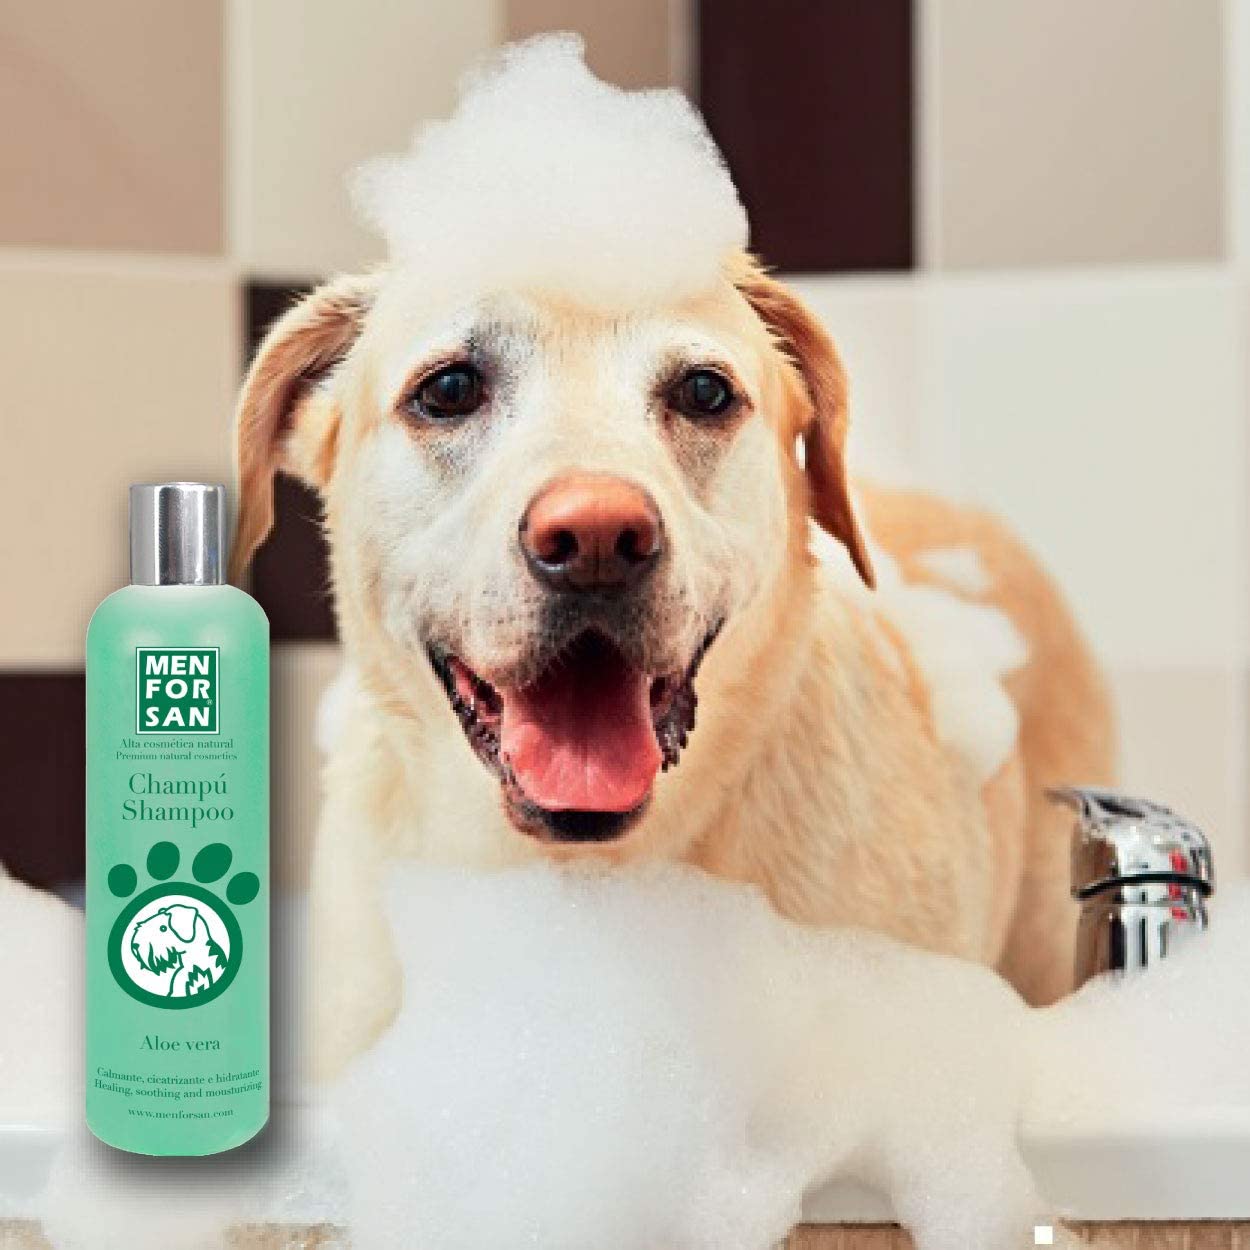 migliori shampoo per cani - men for san